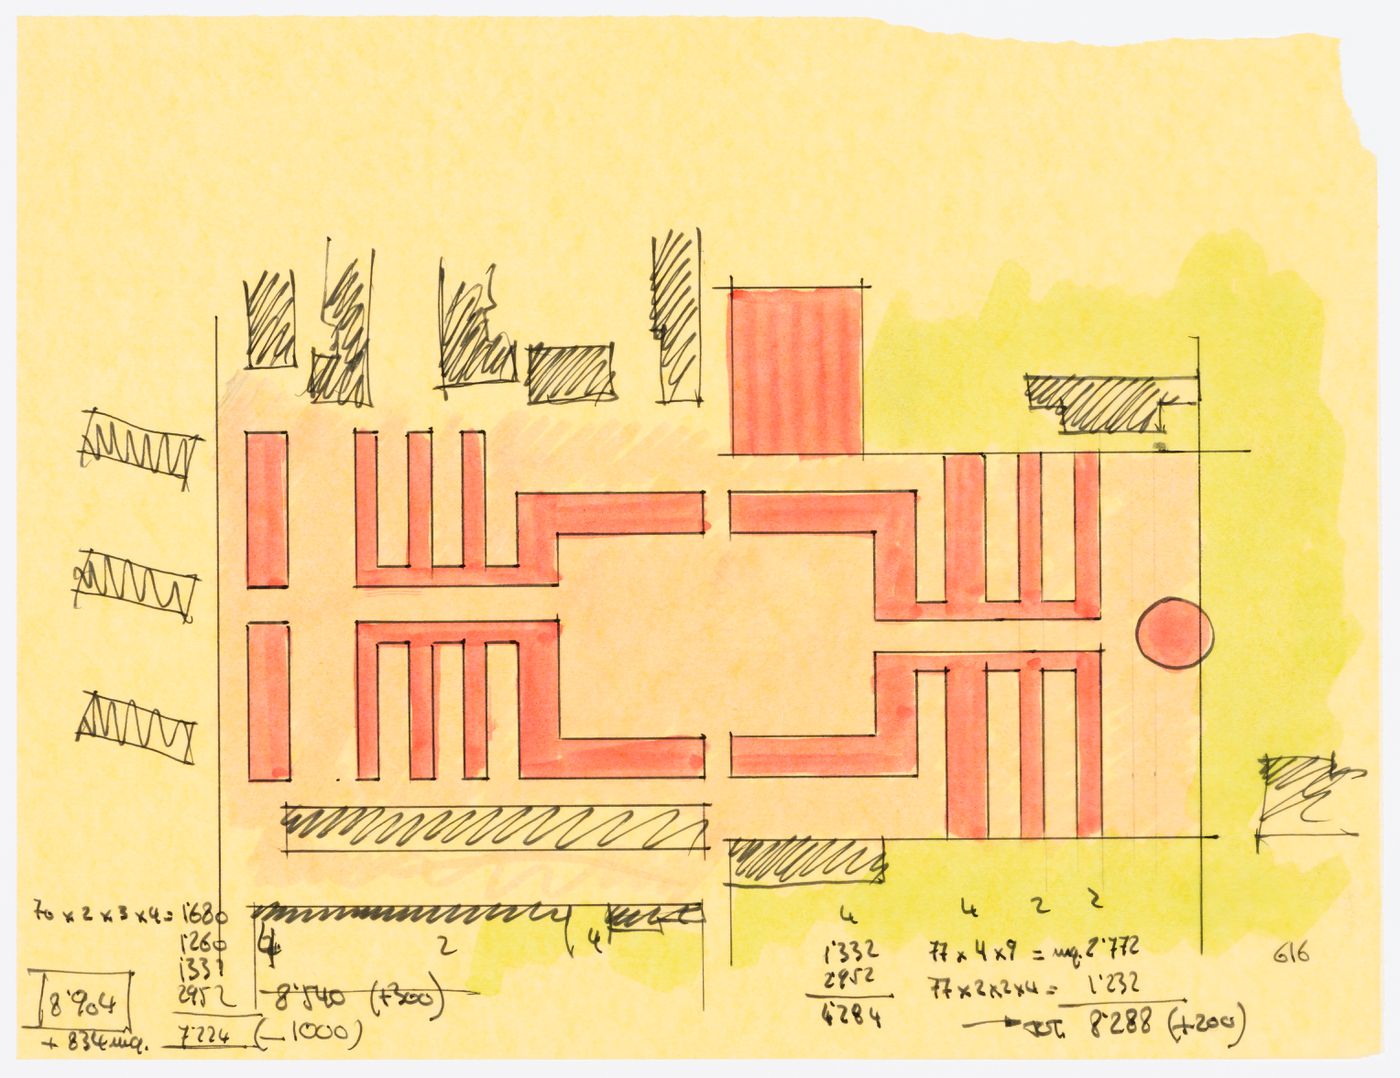 Project for redevelopment of the Campo di Marte area of La Giudecca, Venice, Italy: sketch plan